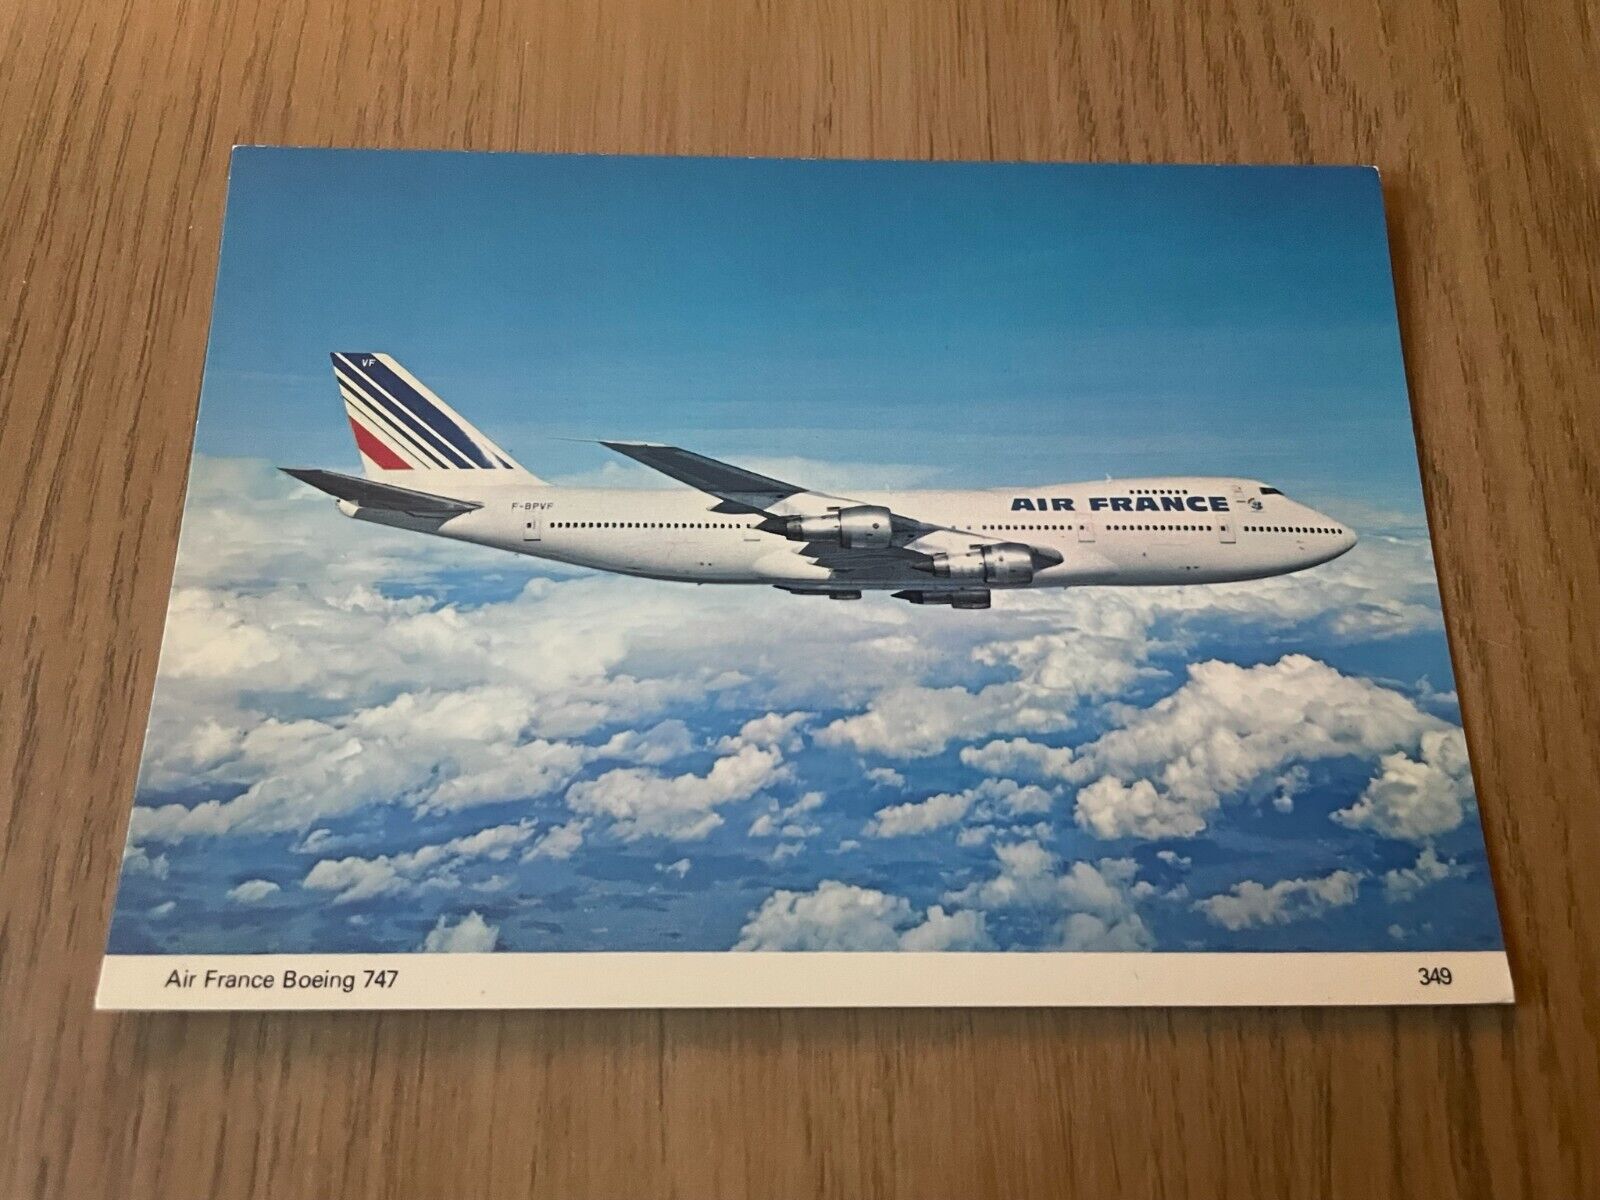 Air France Boeing 747-100 aircraft postcard